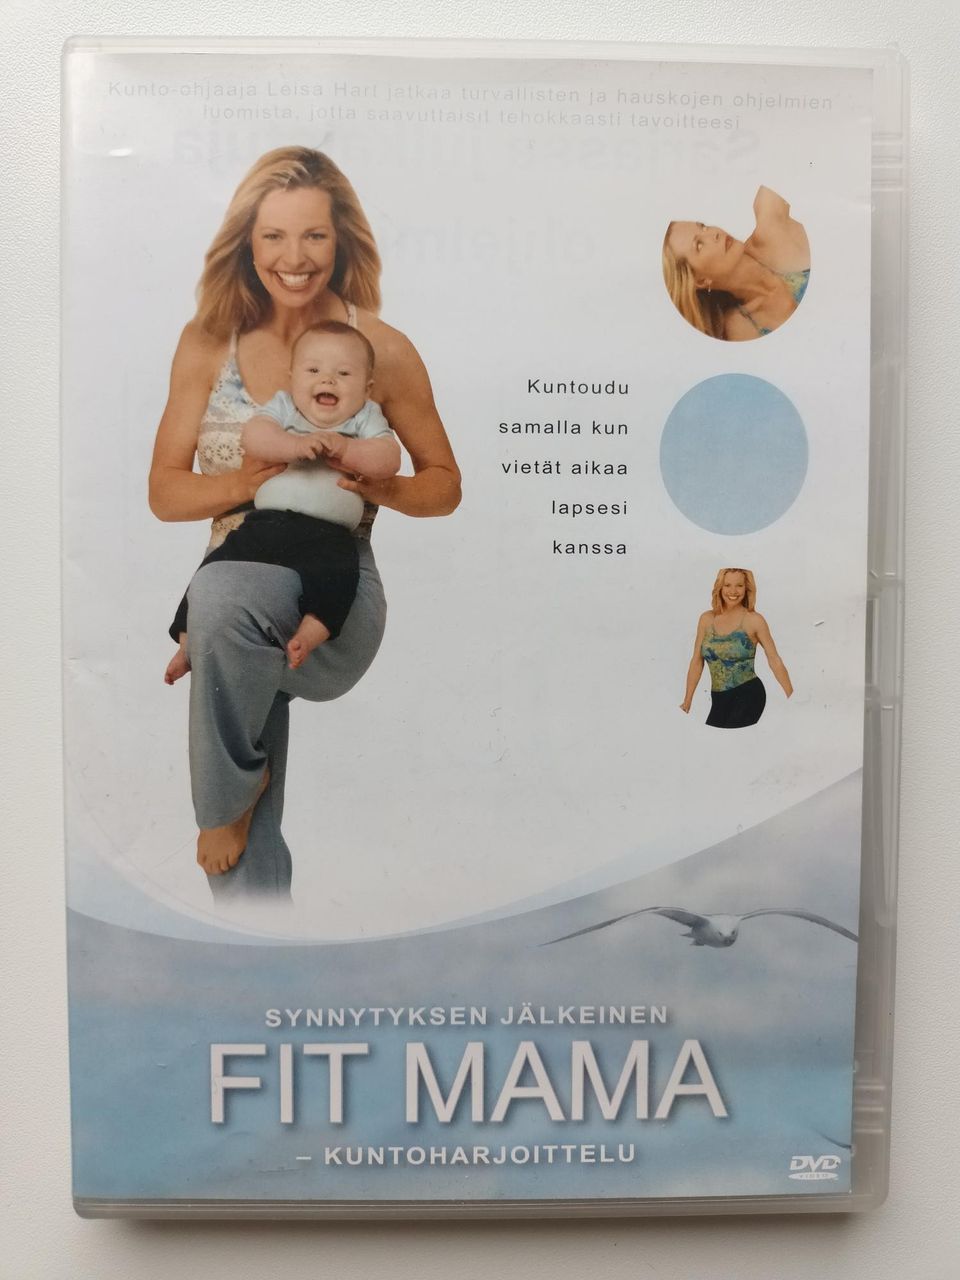 Fit Mama synnytyksen jälkeinen kuntoharjoittelu DVD